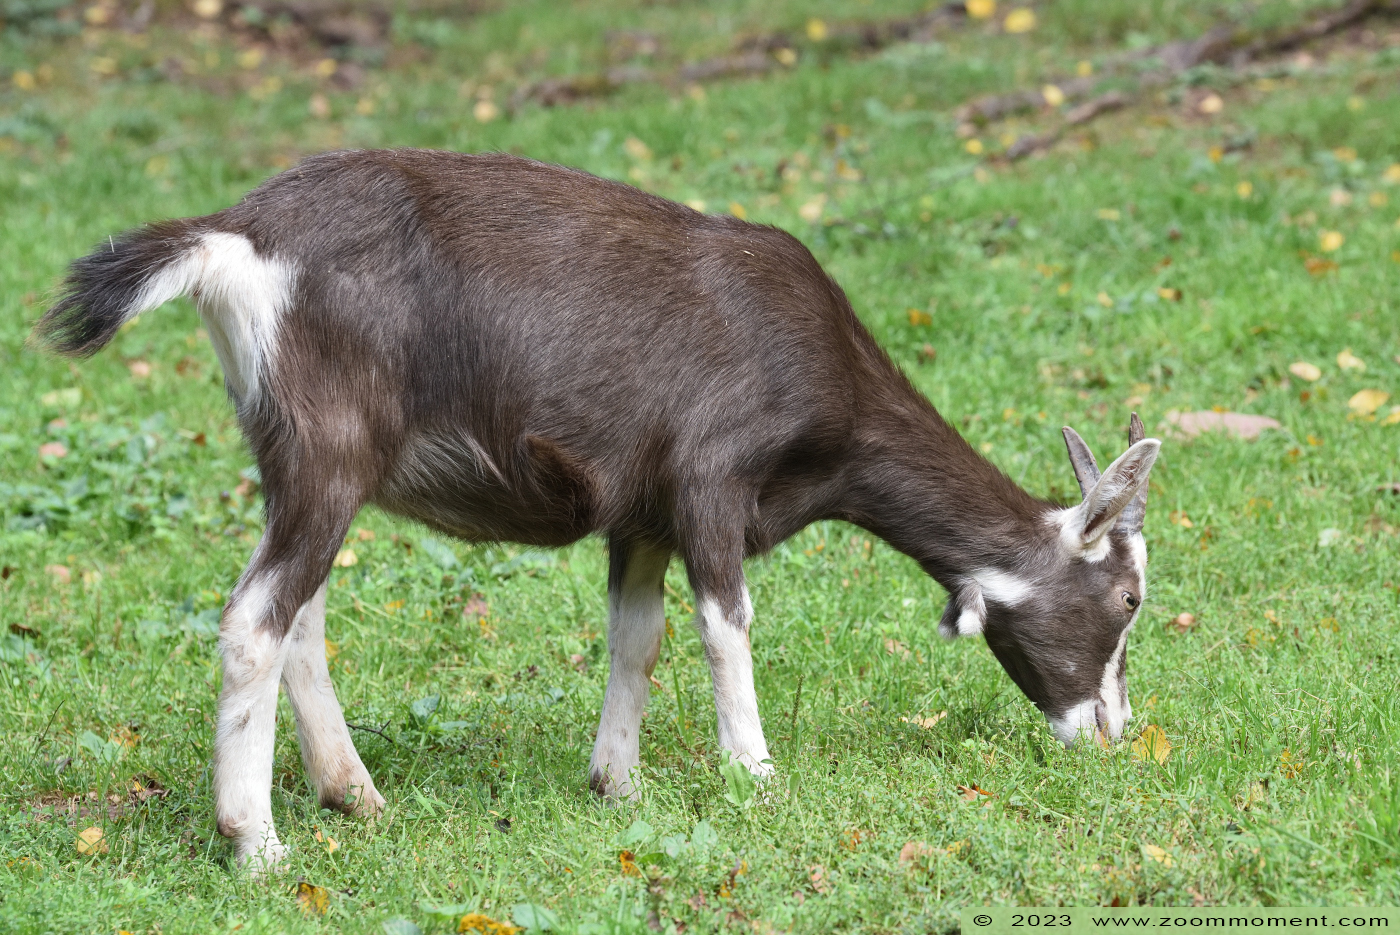 Thüringer geit ( Capra aegagrus hircus ) Thuringian goat
Trefwoorden: Neunkircher Zoo Germany Thüringer geit Capra aegagrus hircus Thuringian goat